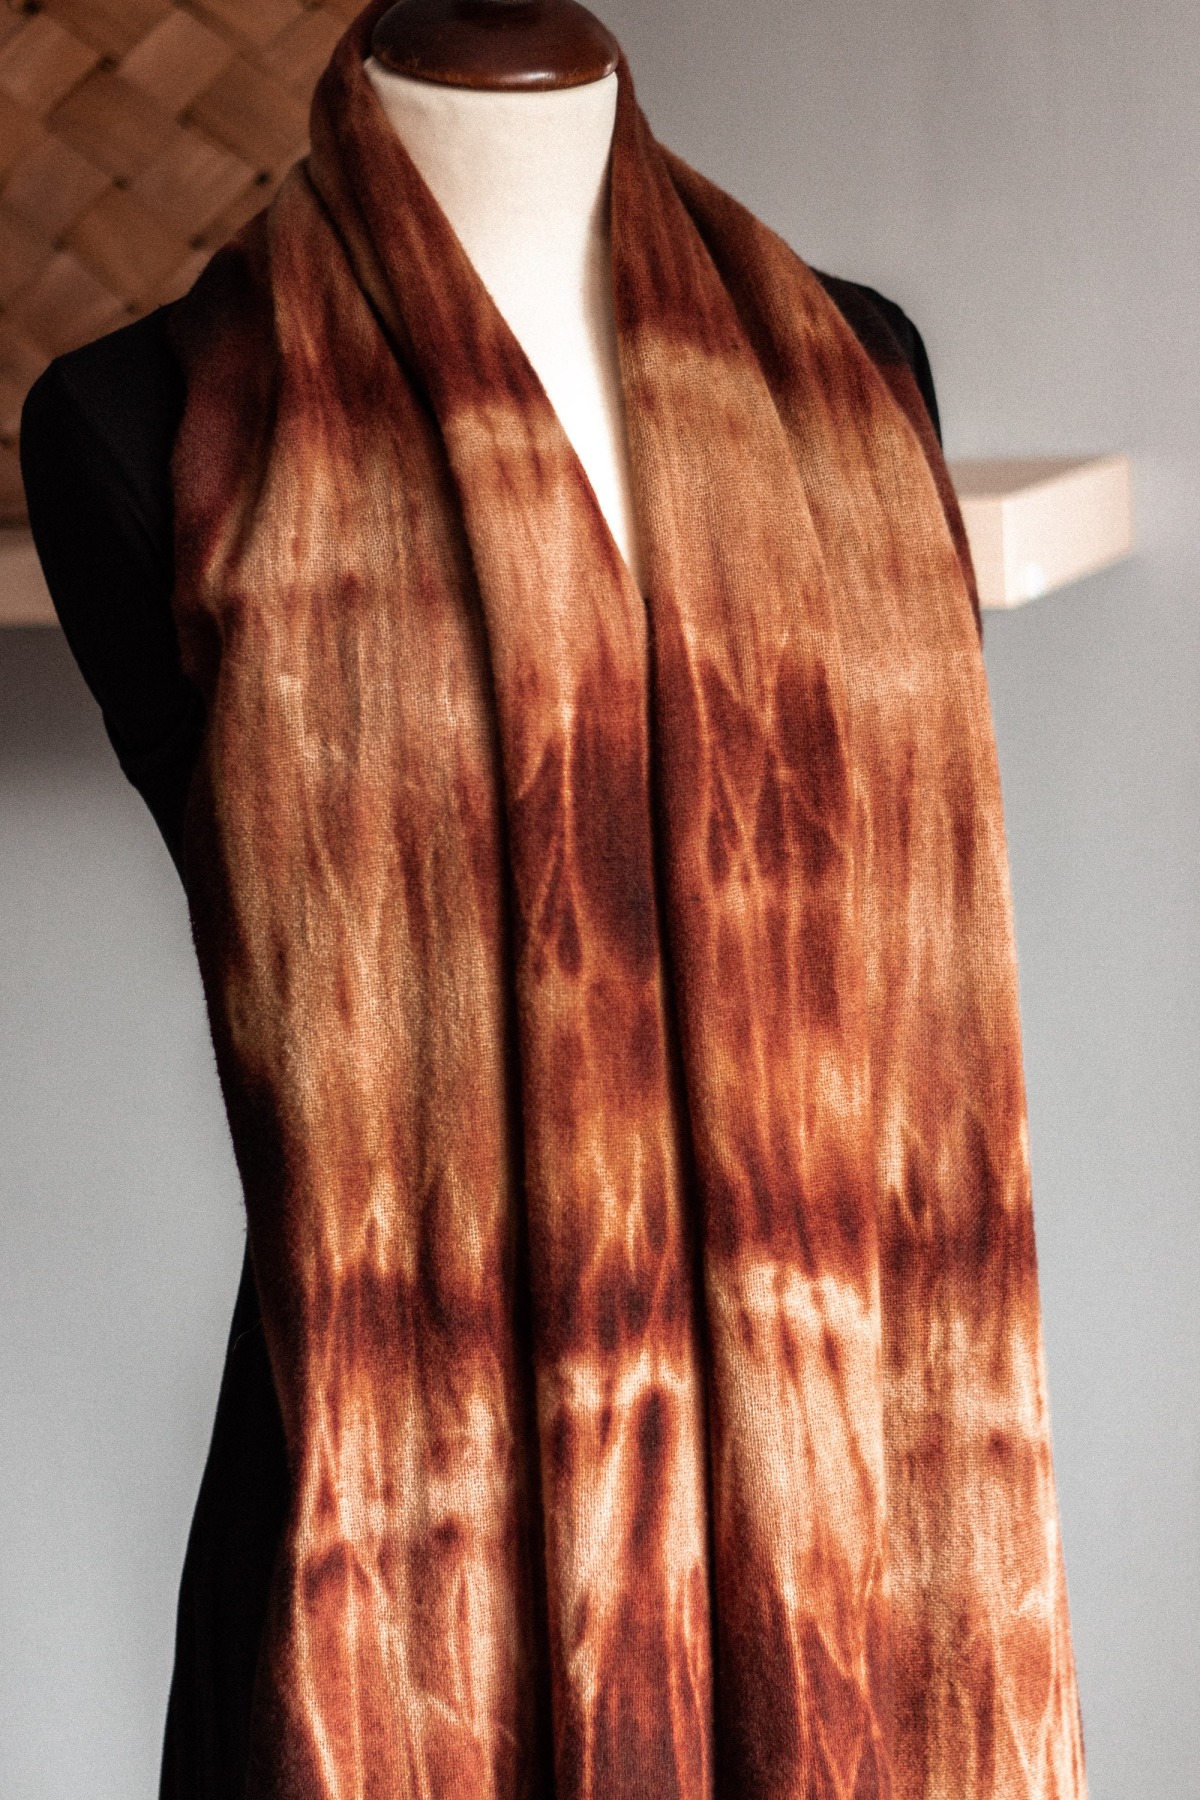 Schal LISA aus feinem Wollstoff, anschmiegsam und weich mit toller Färbung perfekt für den Herbst